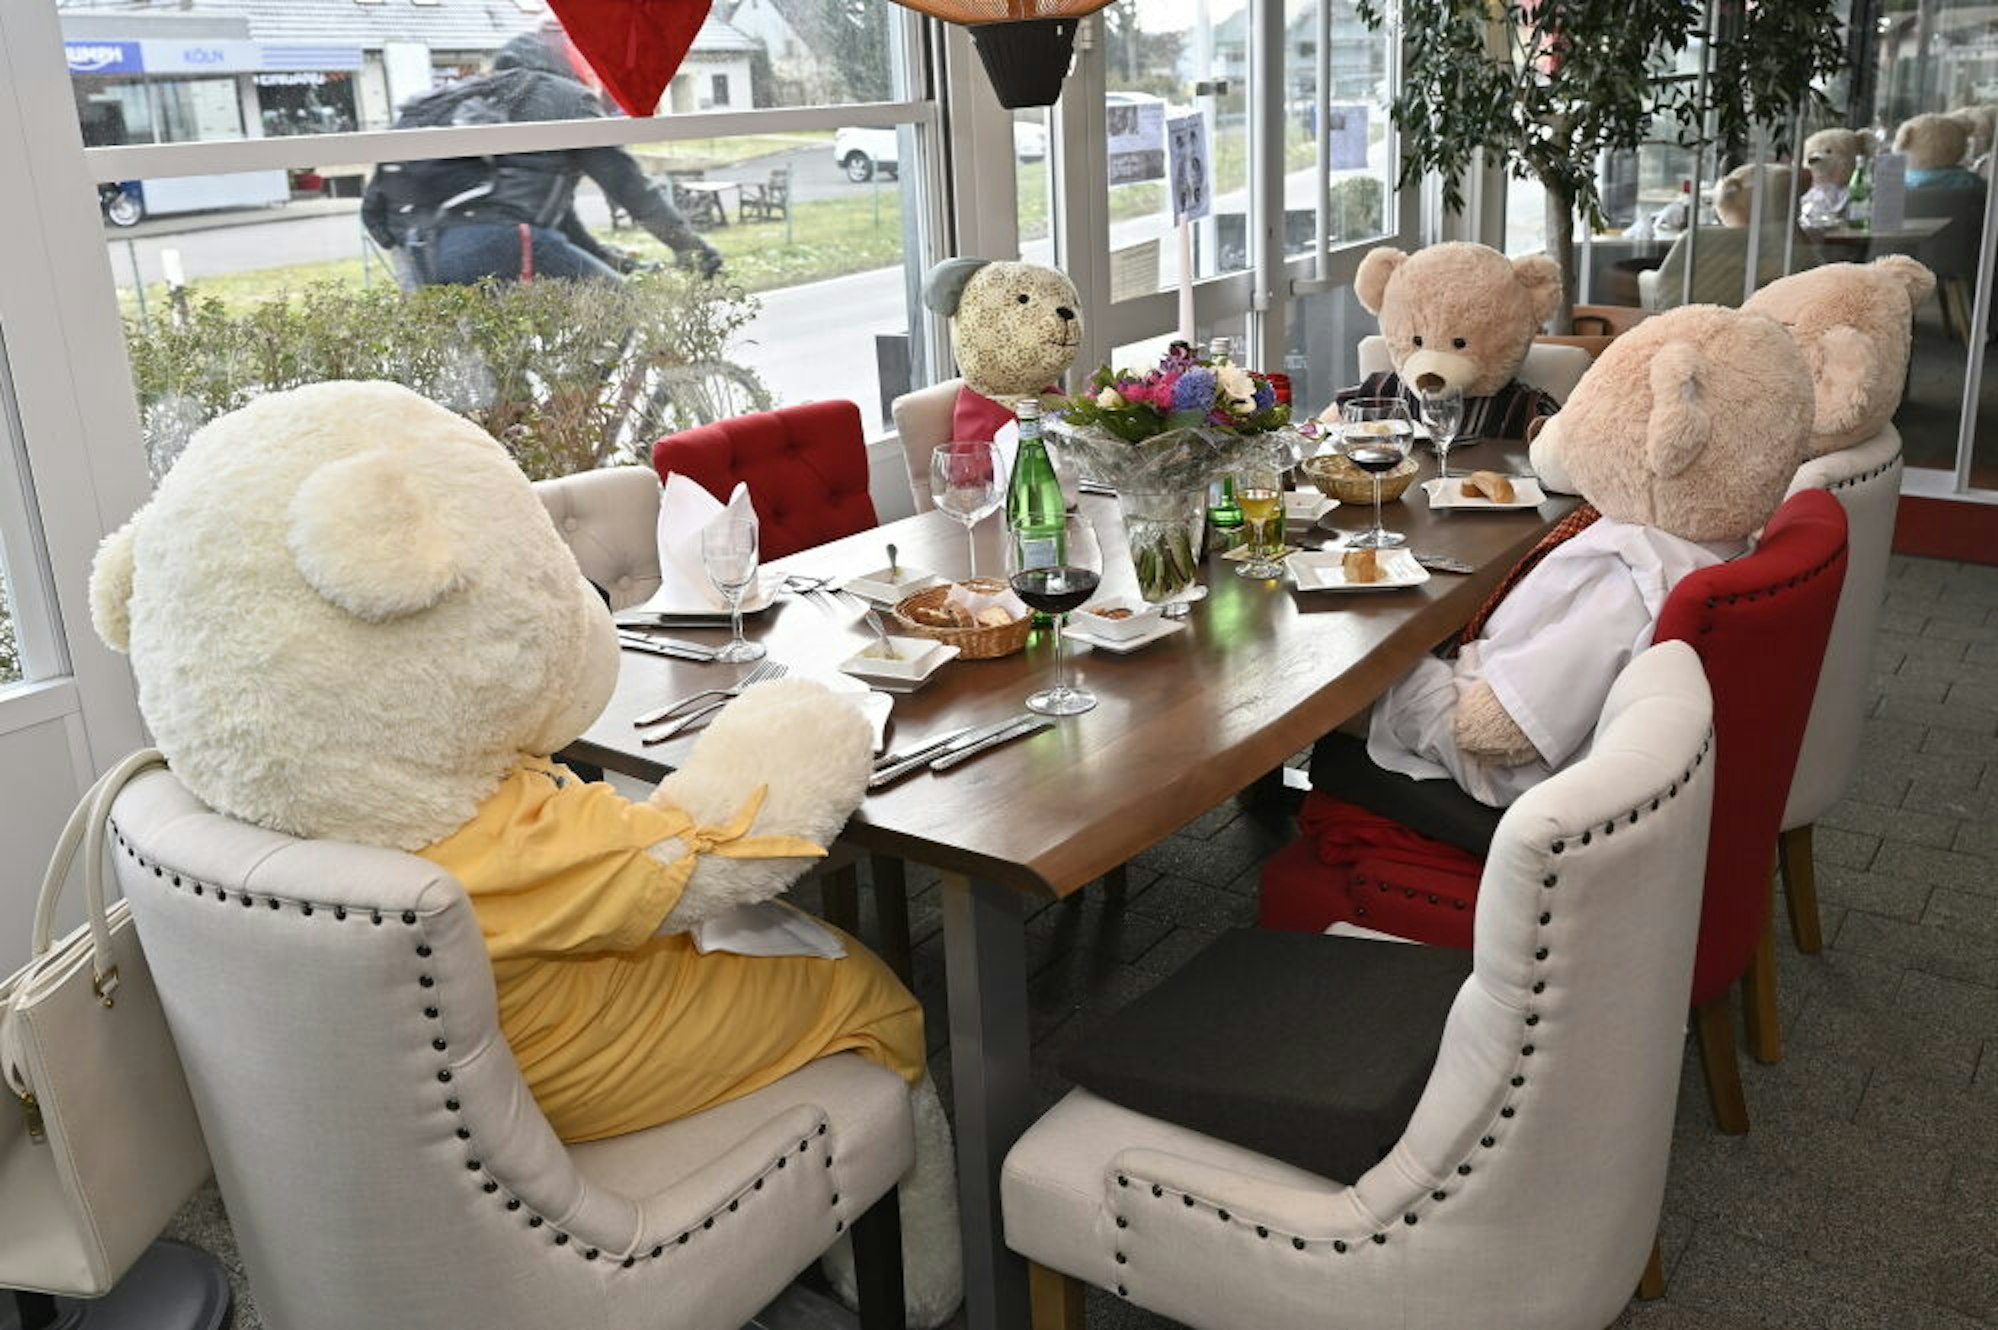 An der Fensterfront des Lehmbacher Hofs zieht eine tafelnde Teddybärenfamilie die Blicke auf sich.